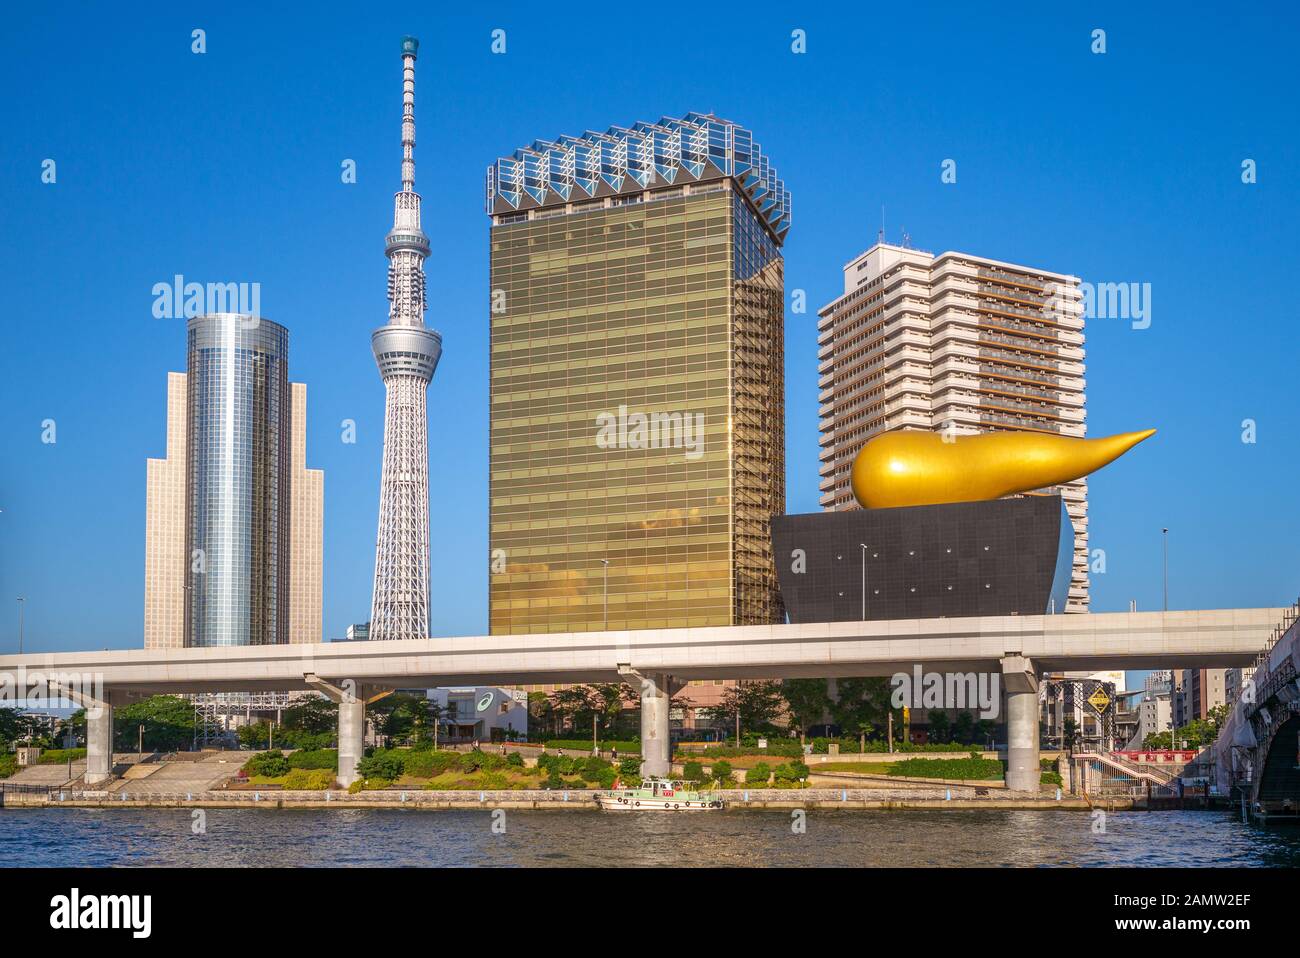 Tokyo, Japon - 13 juin 2019 : Asahi Beer Hall, conçu par le designer français Philippe Starck et achevé en 1989, sur la rive de la rivière Sumida avec tok Banque D'Images